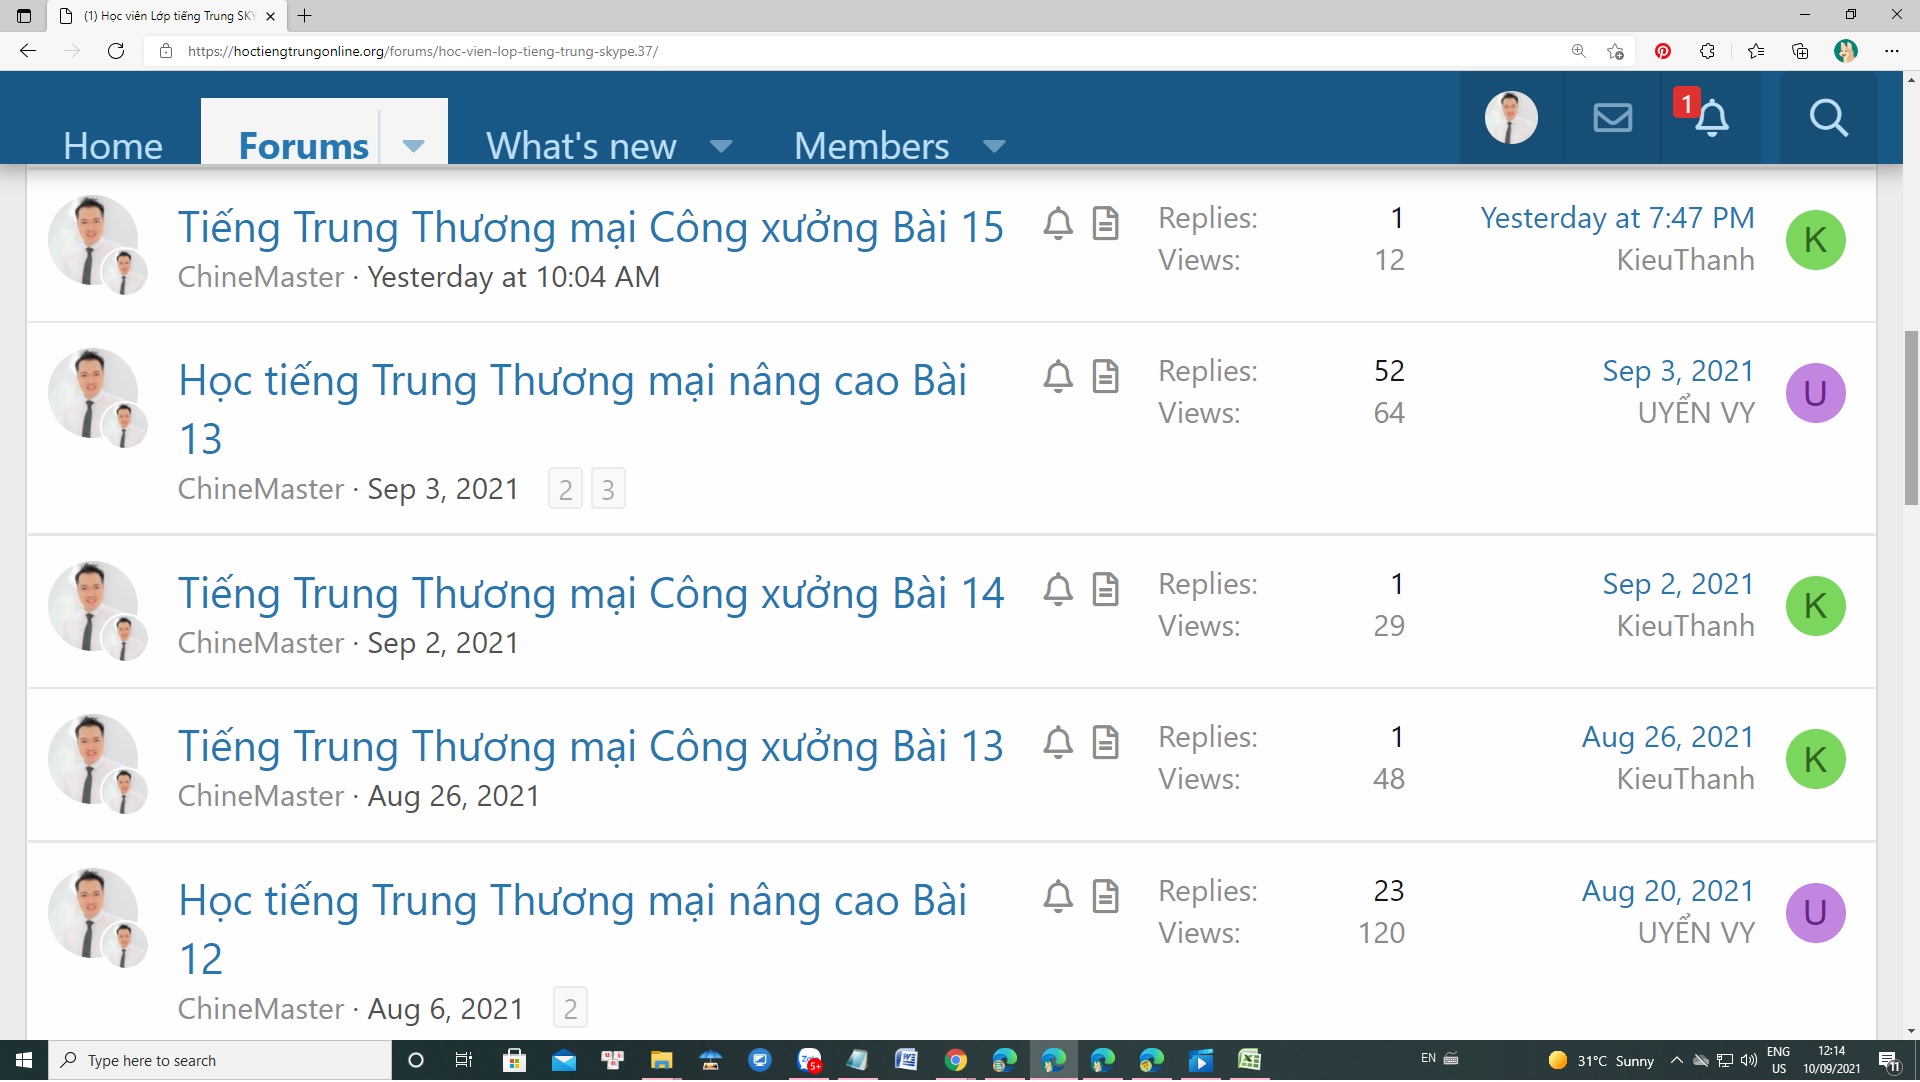 Diễn đàn học tiếng Trung thương mại online Thầy Vũ hỗ trợ giải đáp thắc mắc trực tuyến cho bộ sách giáo trình tiếng Trung thương mại cơ bản và bộ giáo trình tiếng Trung thương mại nâng cao ChineMaster